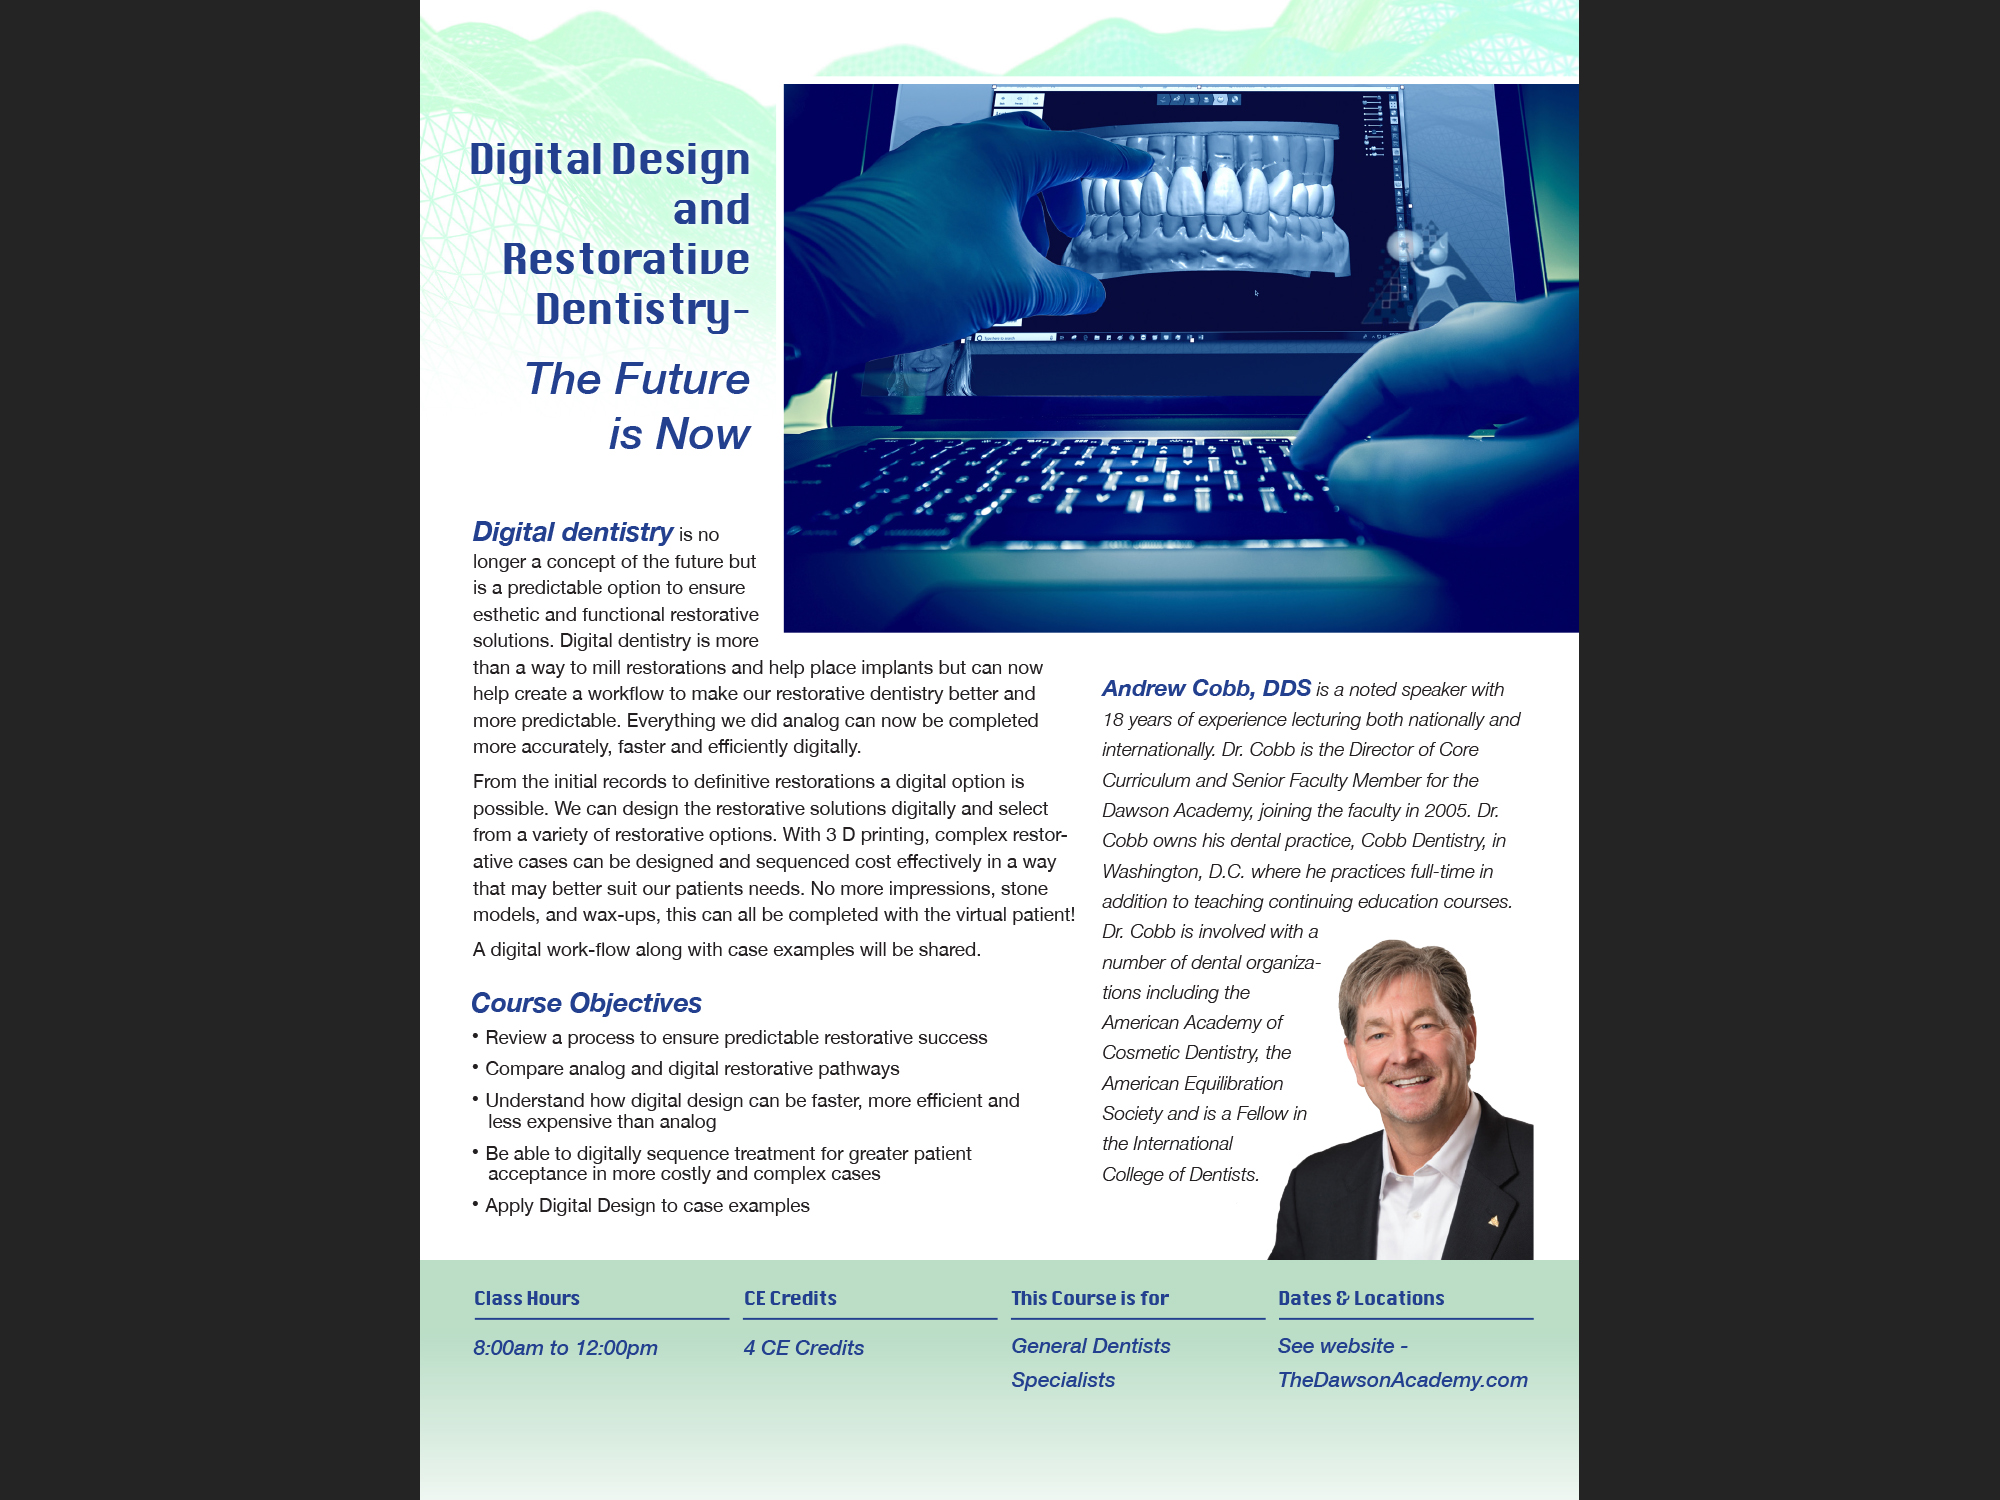 Digital Design and Restorative Dentistry, 2020; flyer.